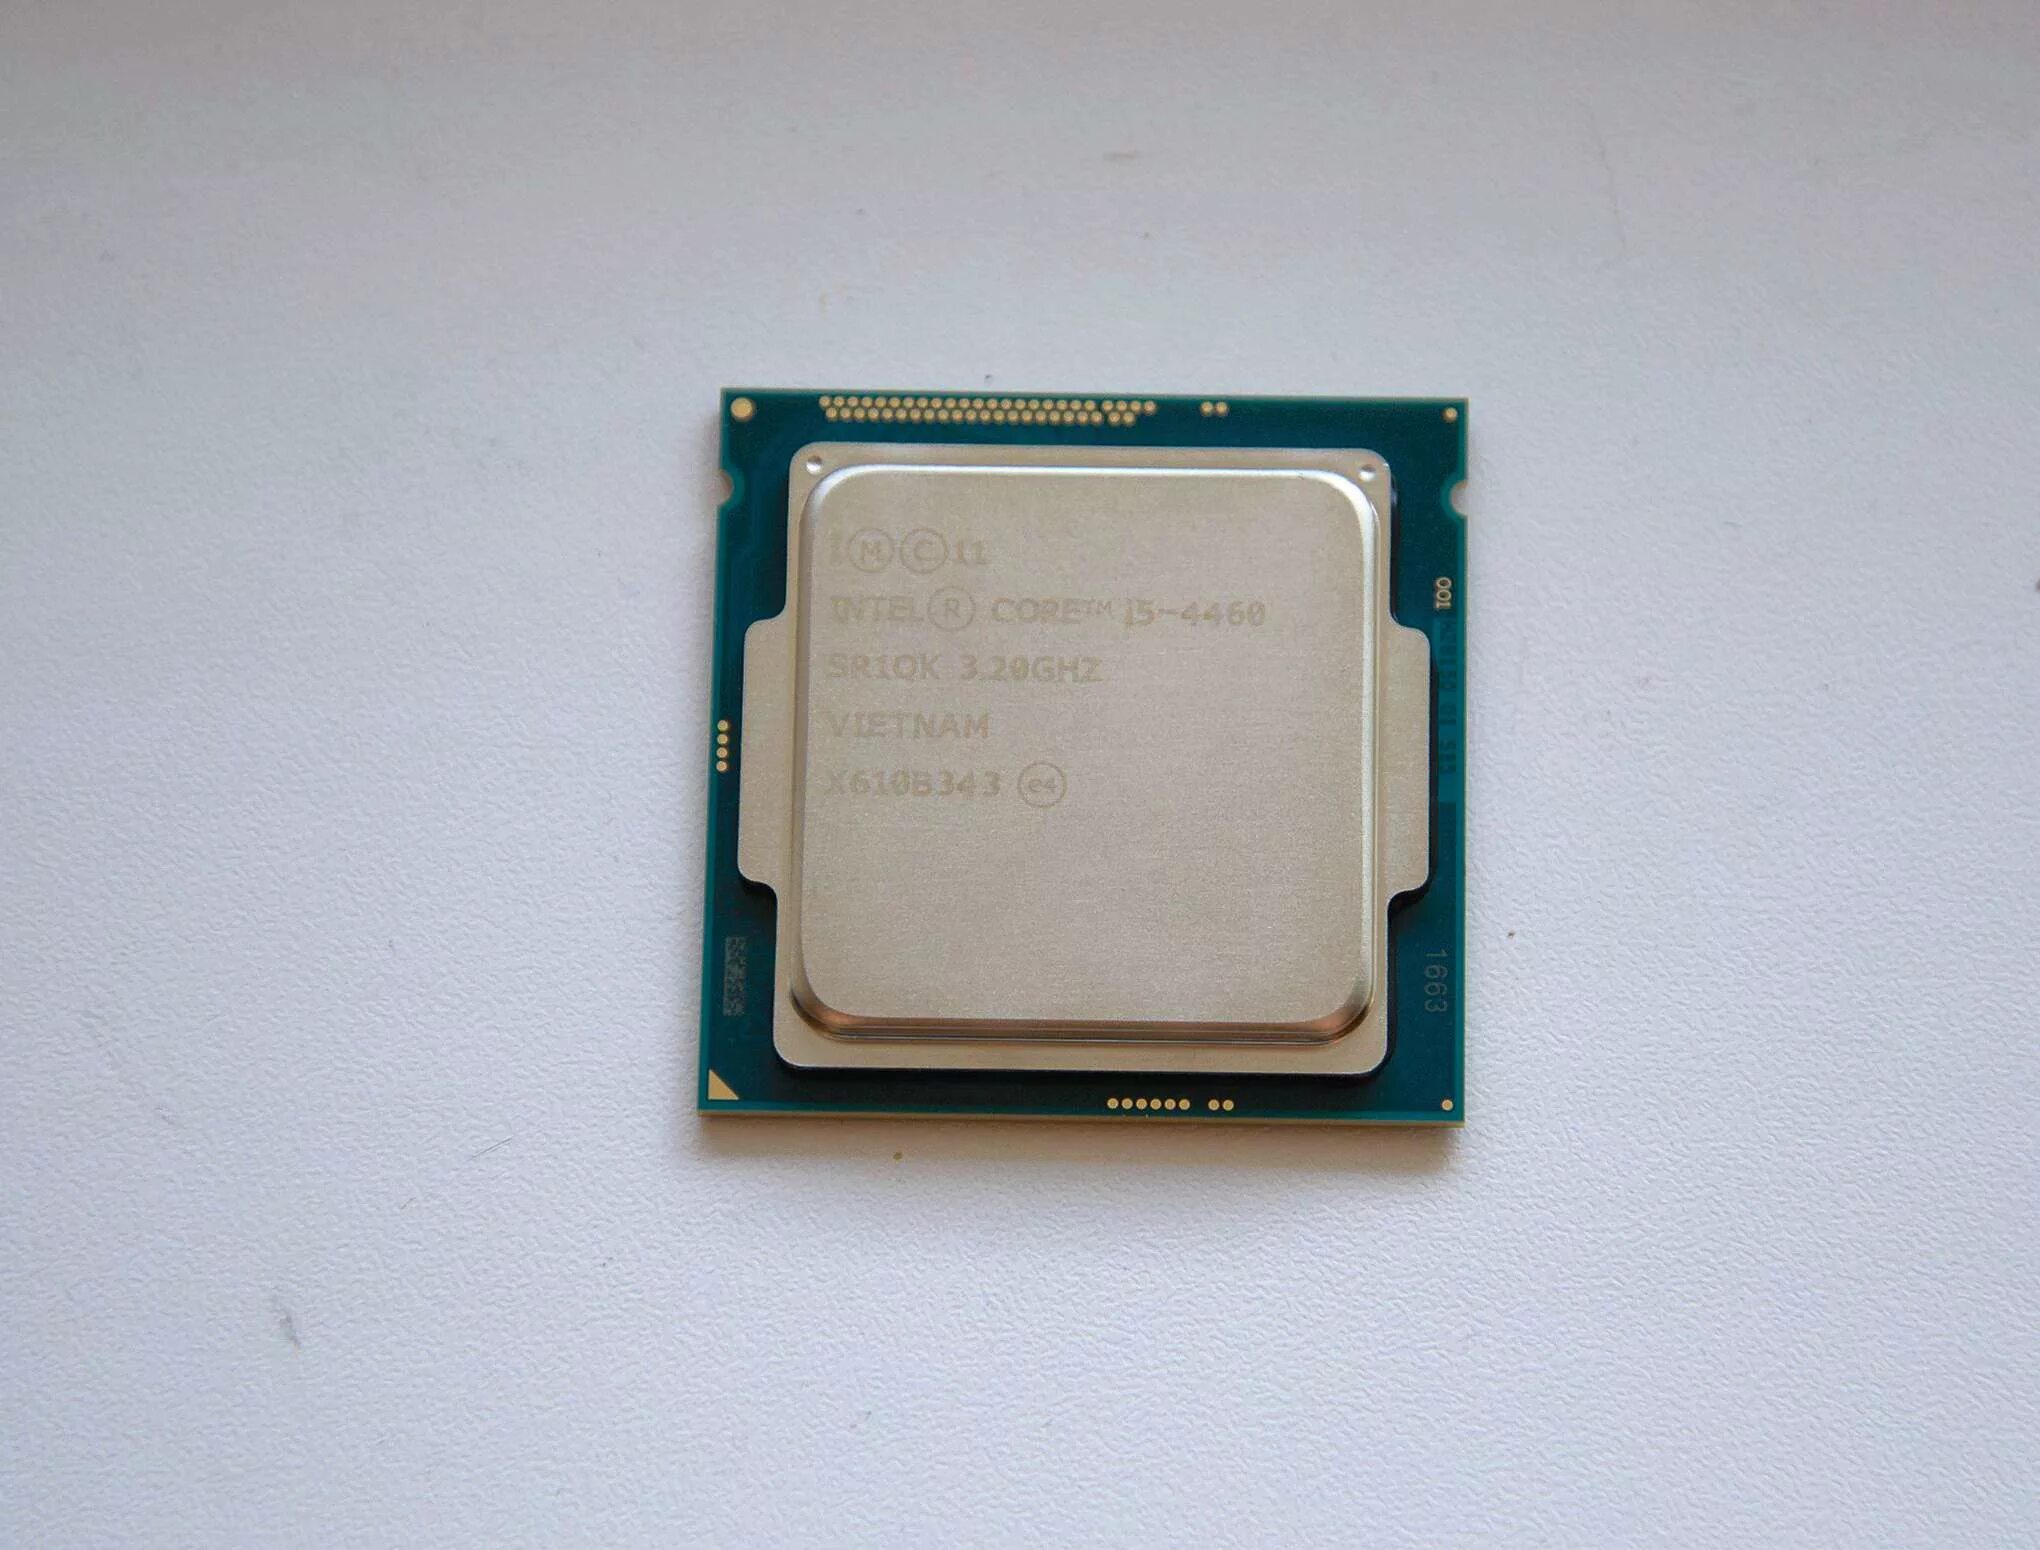 I5 4460 сокет. Intel Core i5-4460. Процессор Intel Core i5-4460s Haswell. Intel Core i5-4460 OEM. Интел 4460